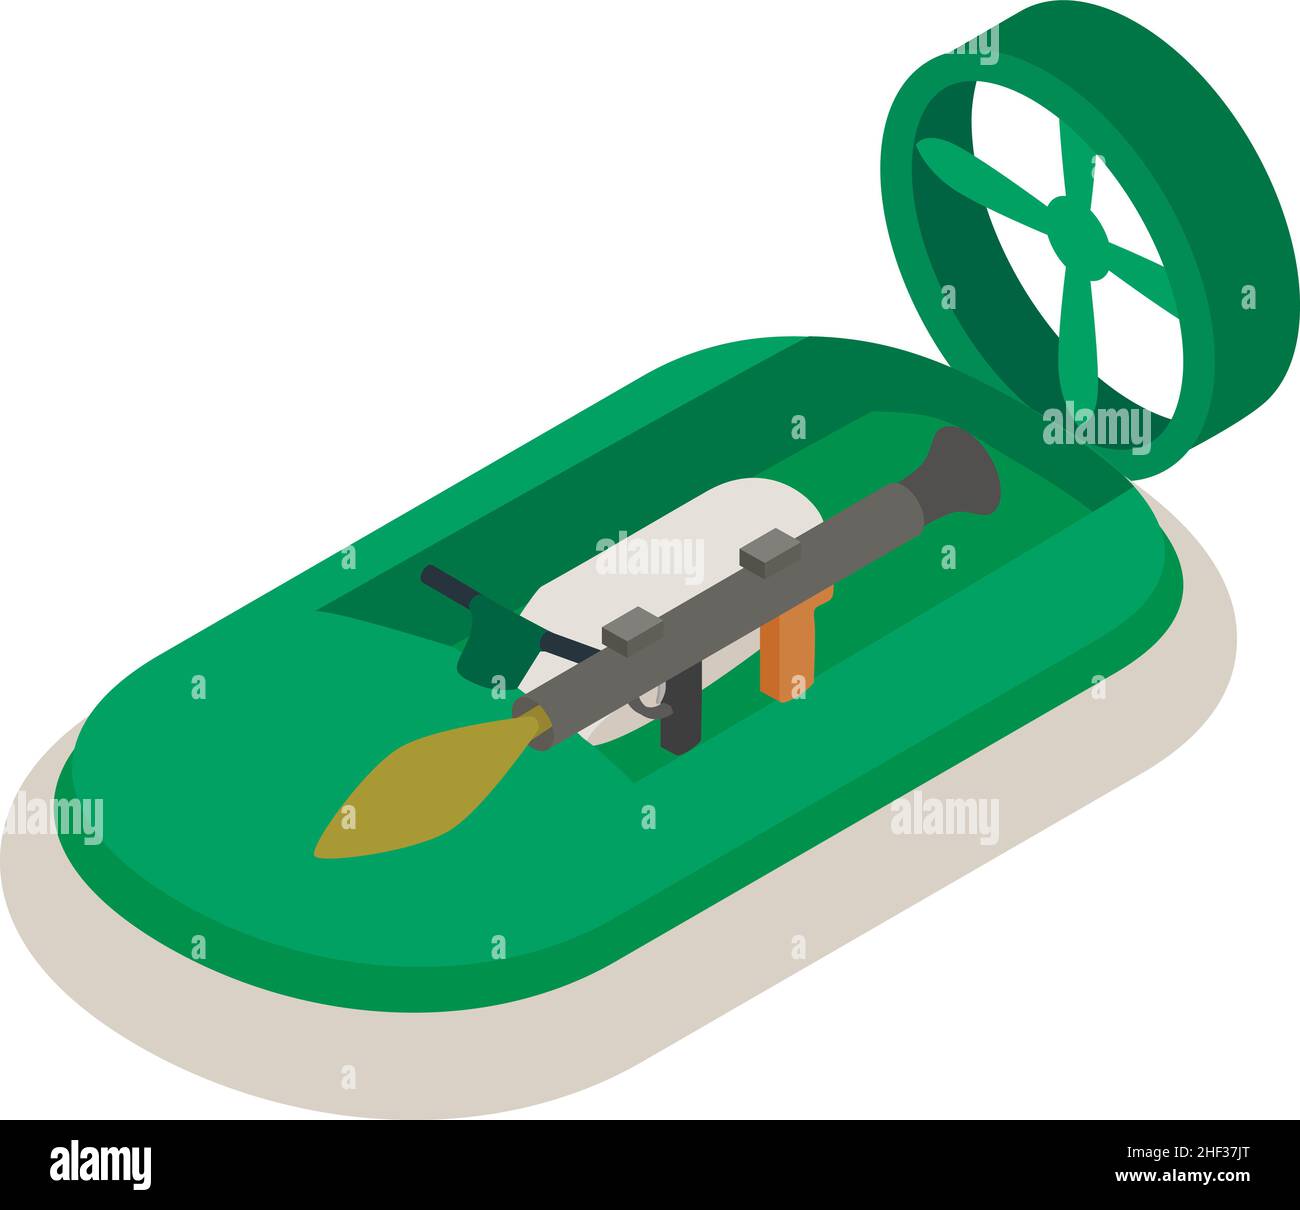 Icône d'aéroglisseur vecteur isométrique.Aéroglisseur militaire avec icône de lanceur de grenade.Bateau de sauvetage militaire vert moderne, transport d'eau, lance-roquettes portable, pistolet anti-char à grenade Illustration de Vecteur